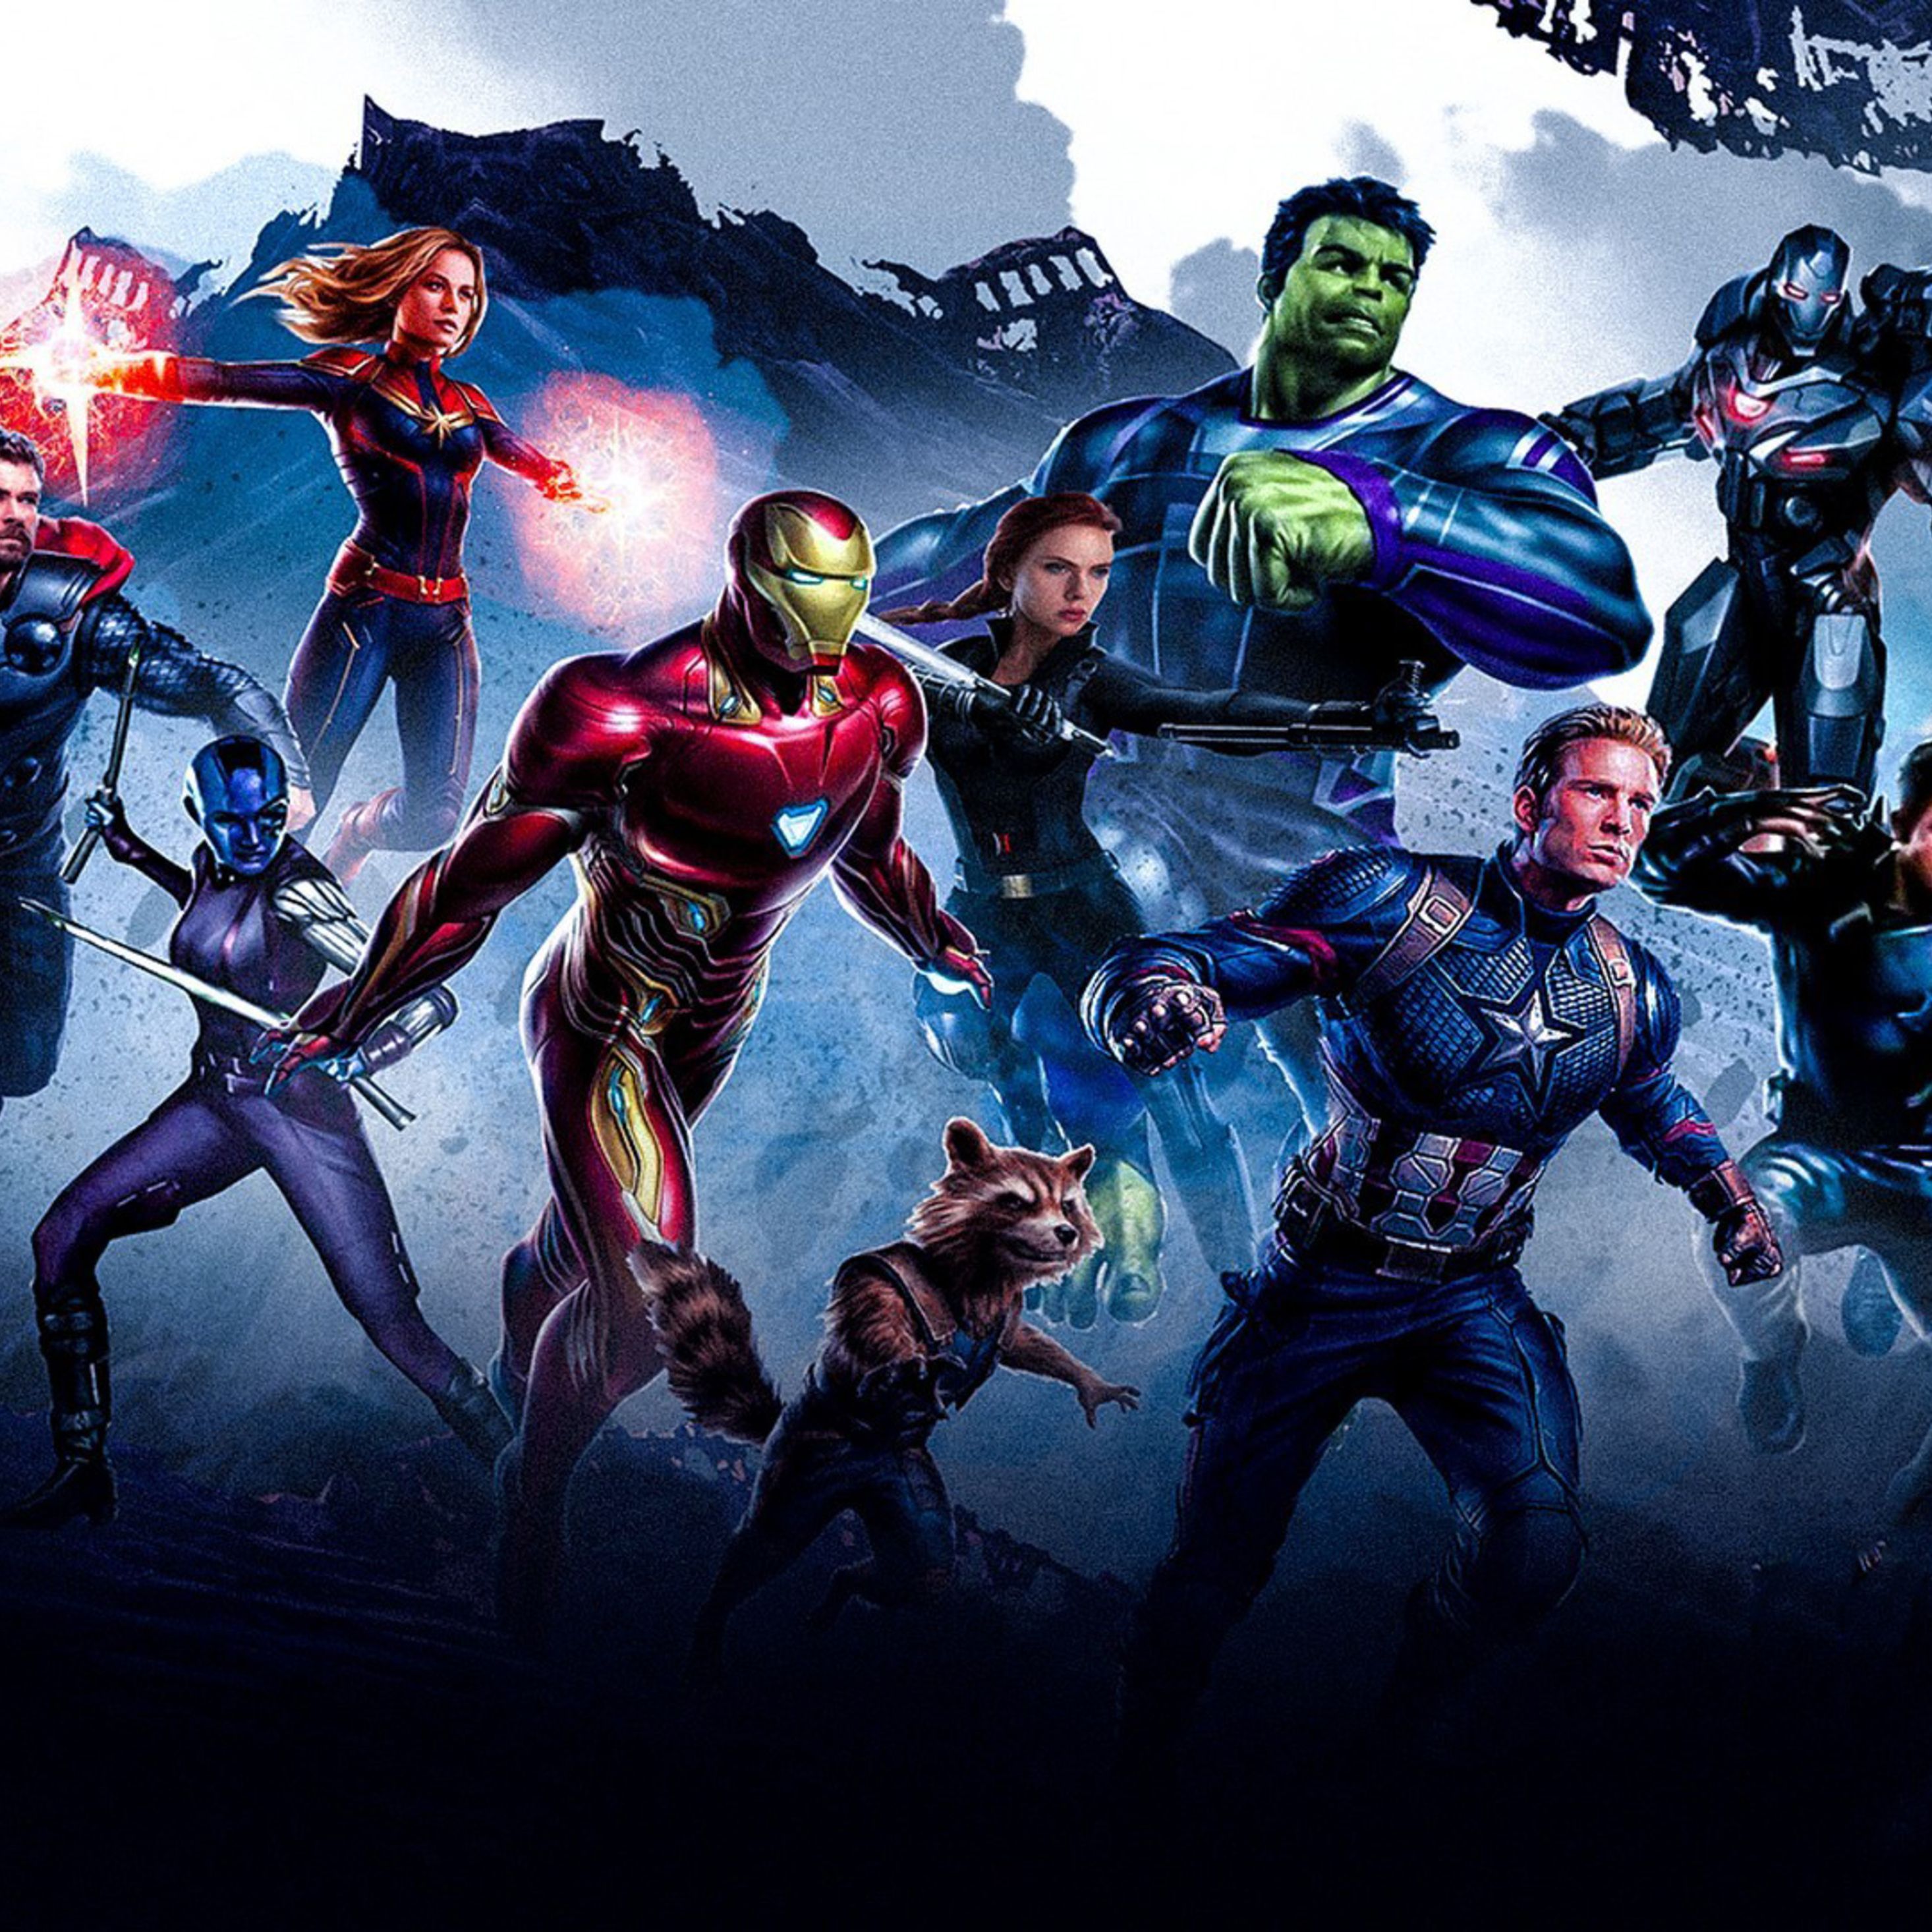 Captain Marvel Full Movie Online: Avengers Endgame Movie Poster Wallpaper